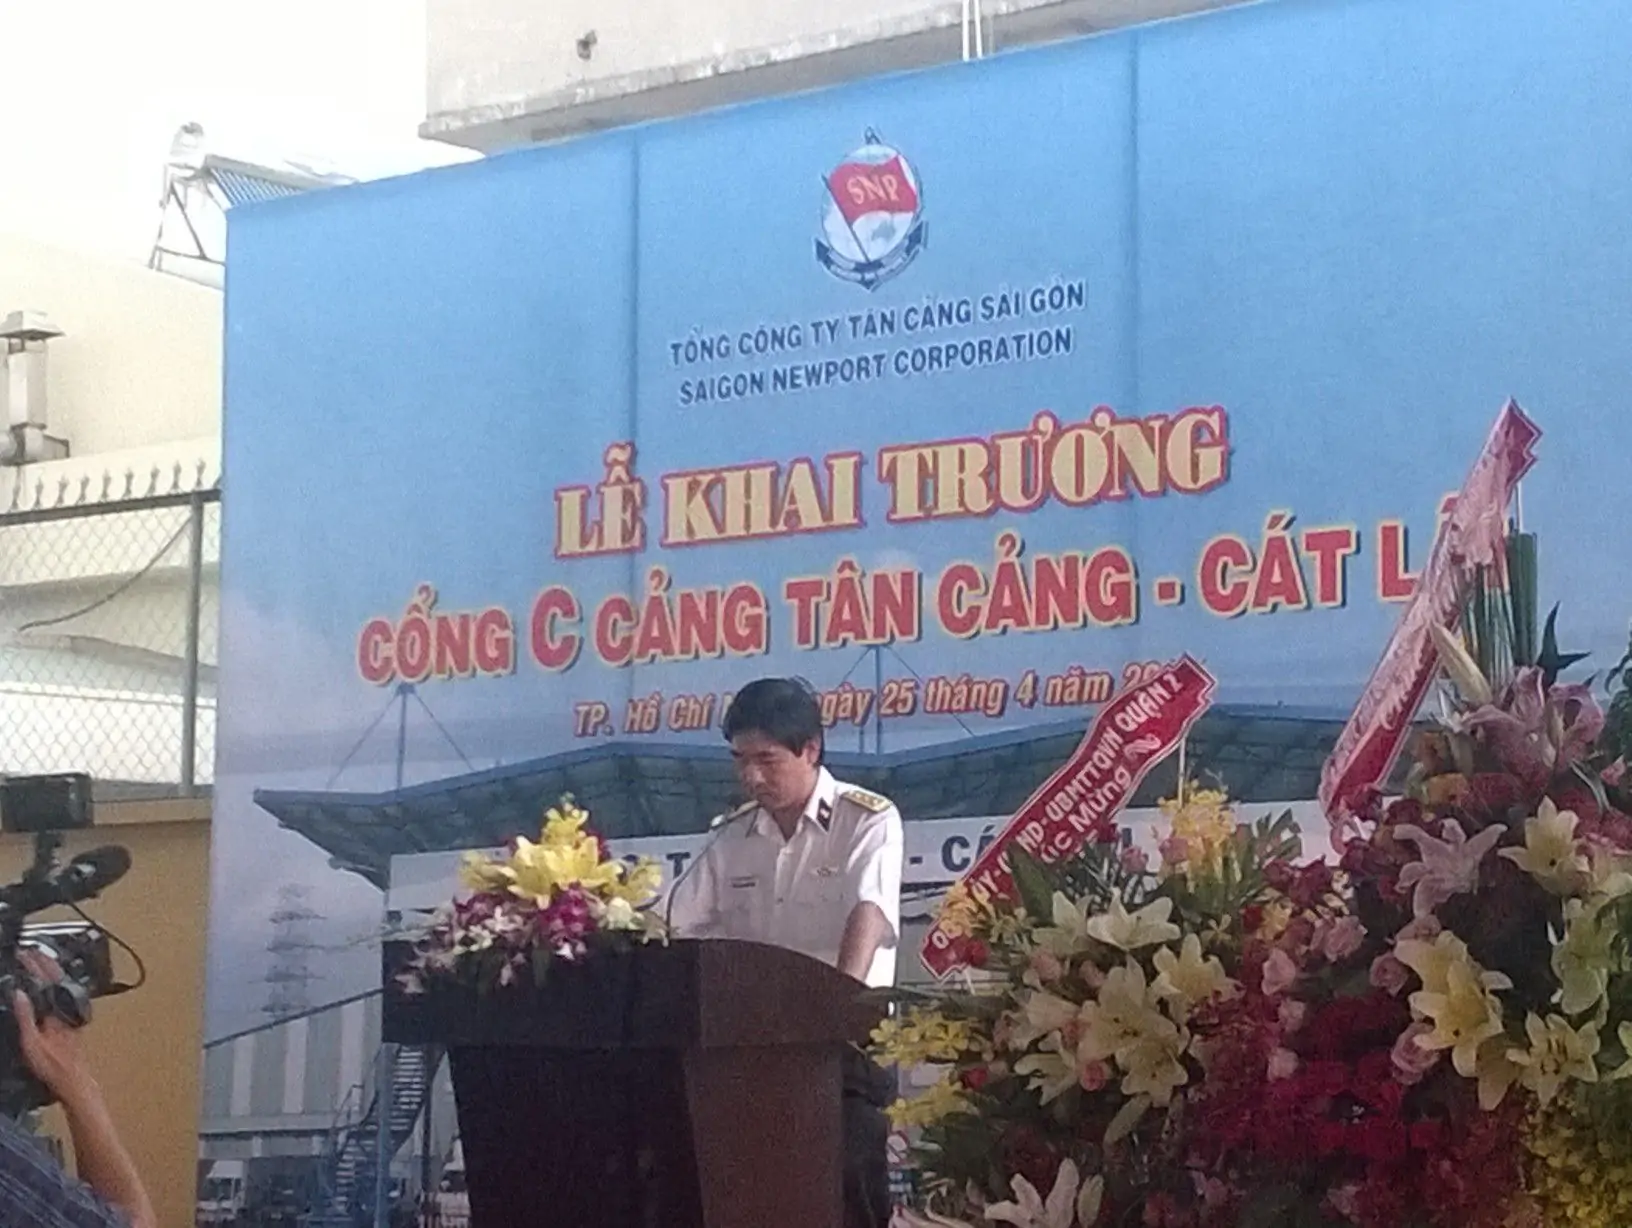 PTGĐ Ngô Minh Thuấn phát biểu khai trương cổng C